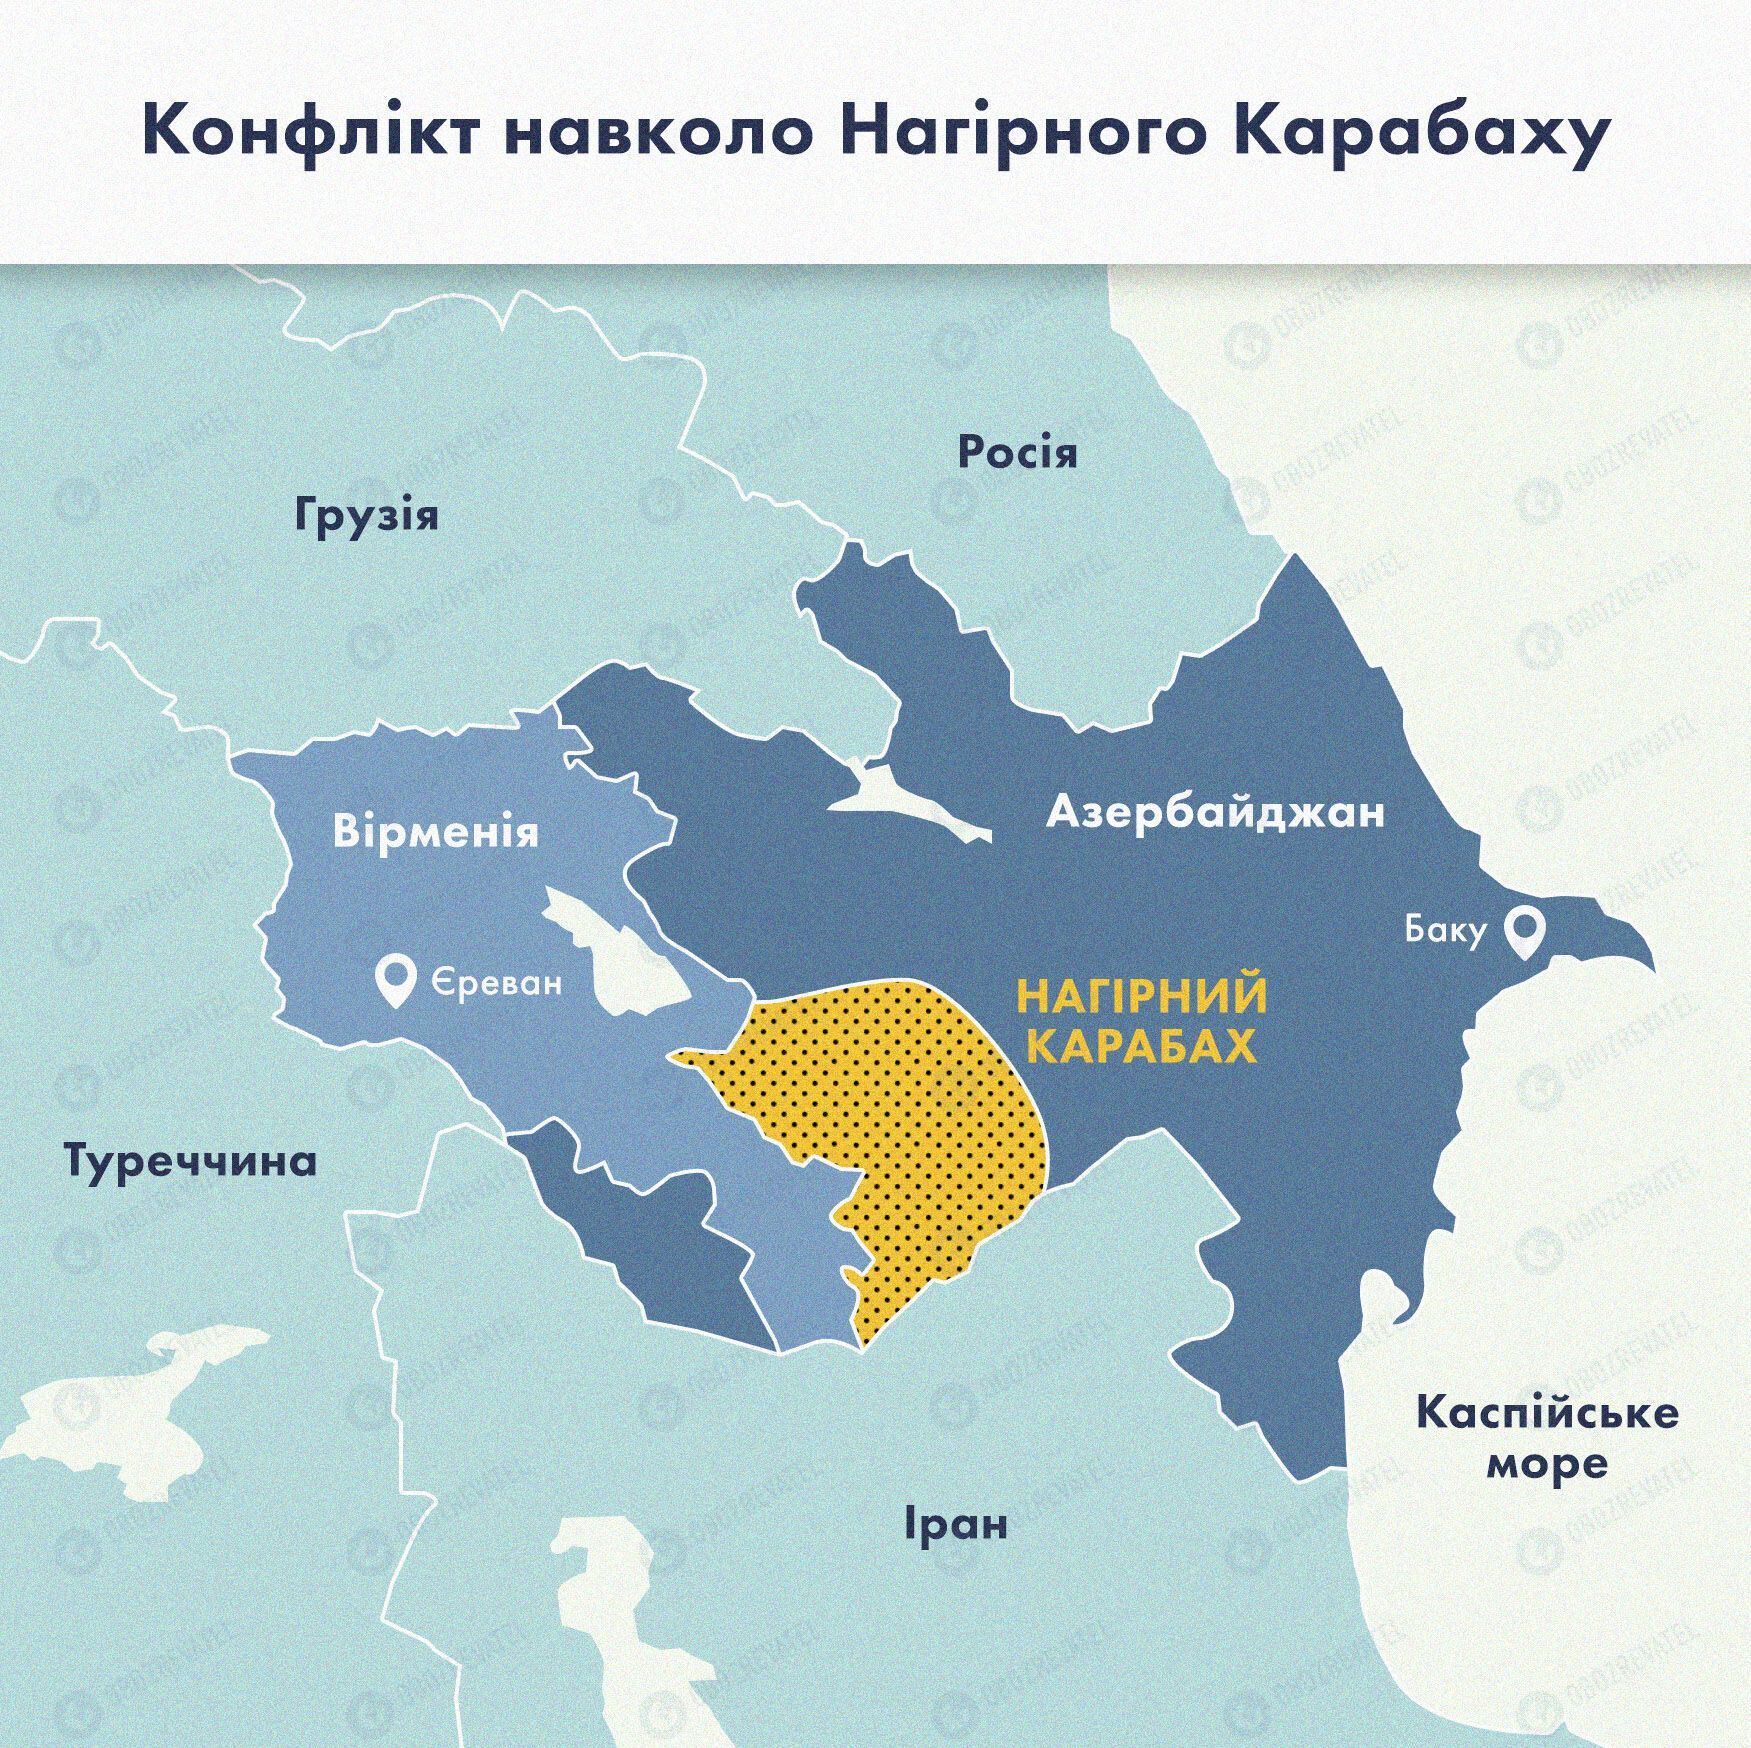 Невизнаний Карабах пригрозив Азербайджану "вітчизняною" війною